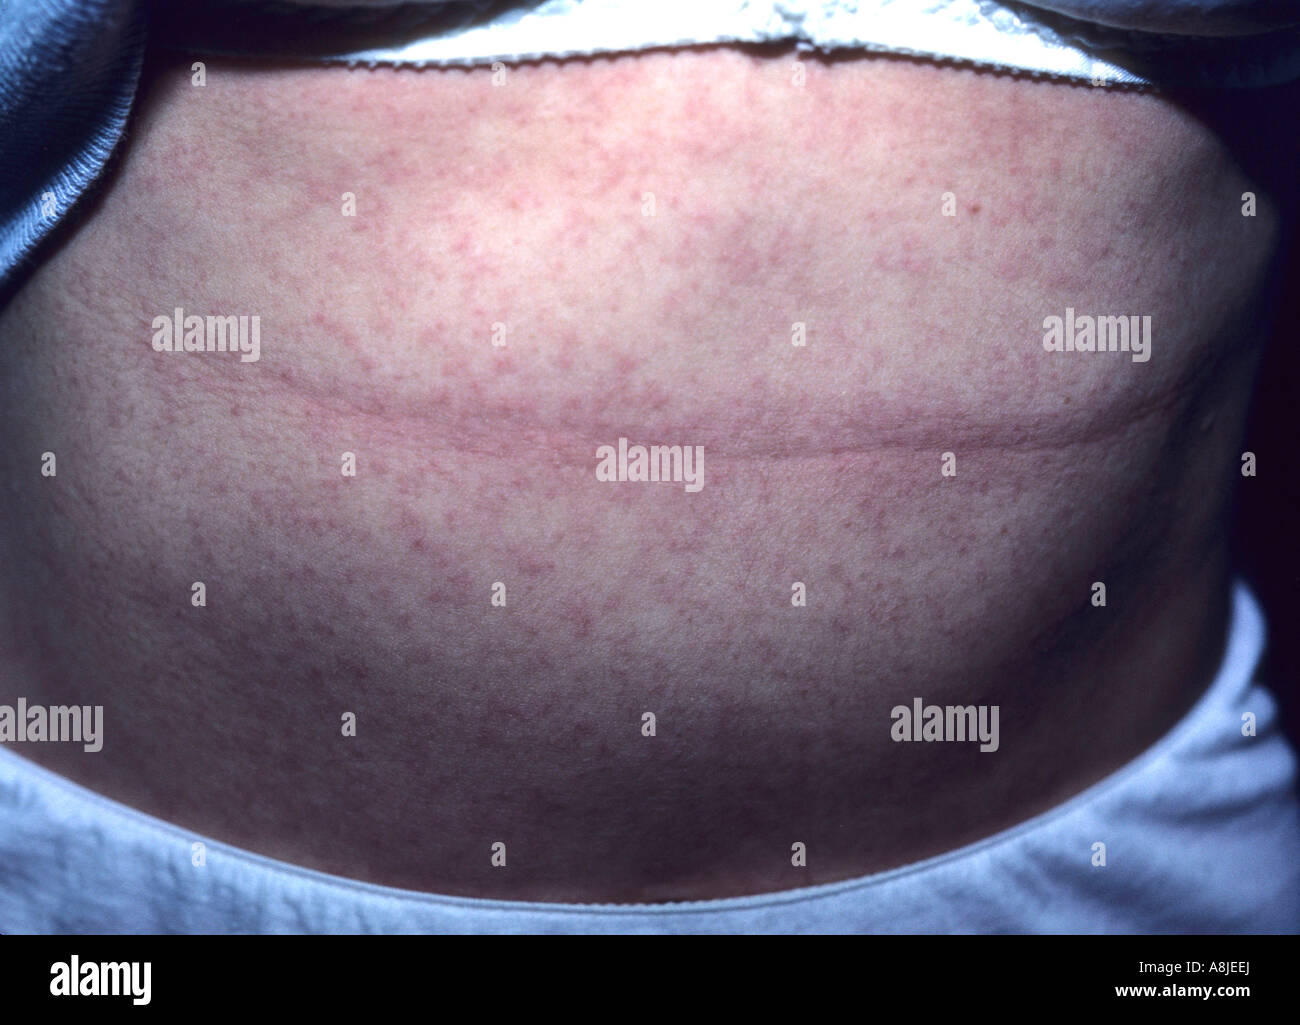 L'eczéma de contact allergique (dermatite) éruption sur l'abdomen de la patiente. Banque D'Images